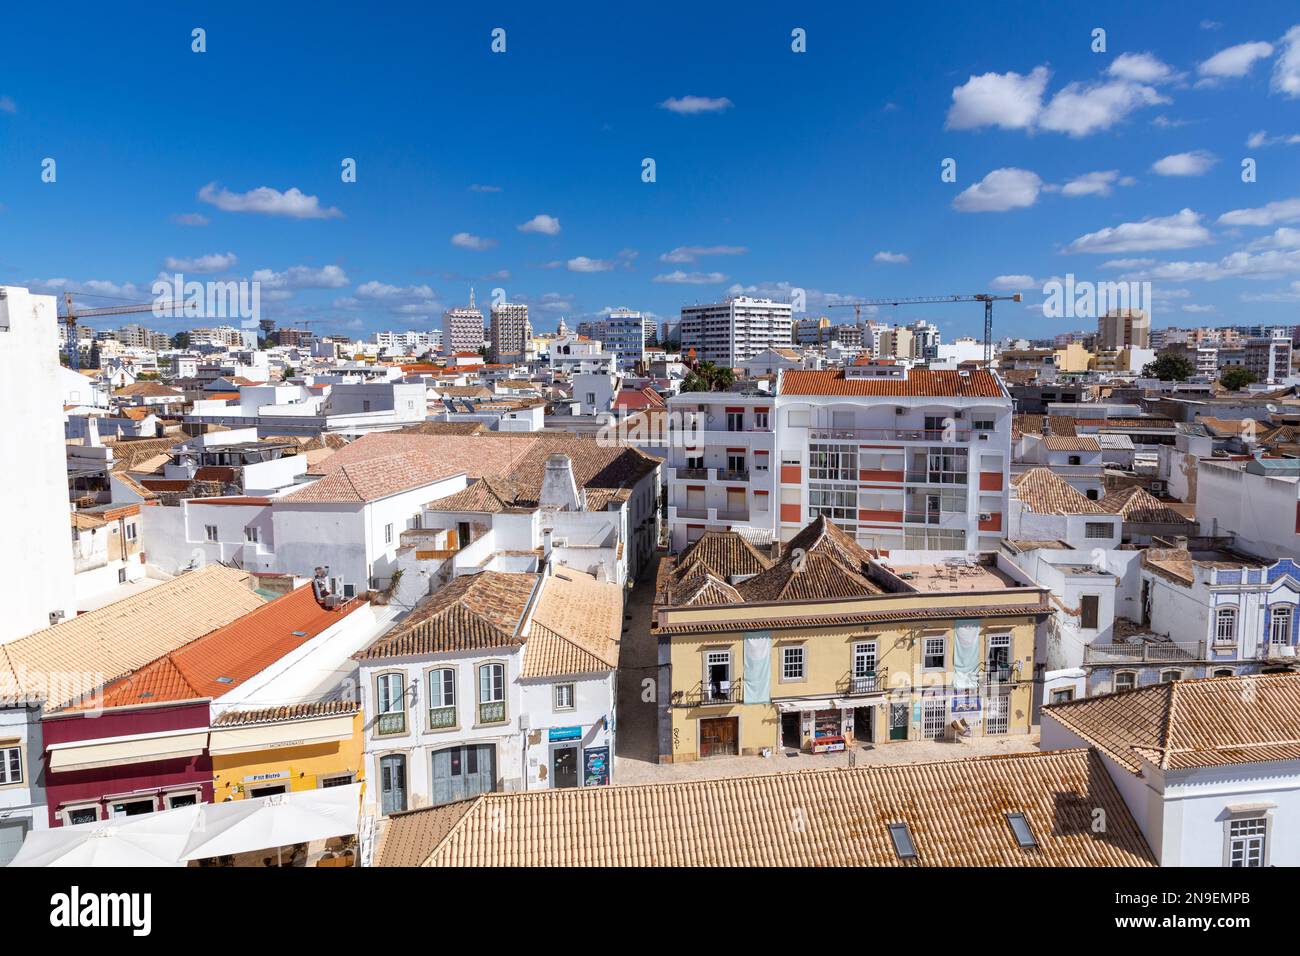 Faro, Portogallo - 3 ottobre 2020: Vista al centro storico di Faro, Portogallo, Algarve con un mix di architettura moderna e tradizionale. Foto Stock